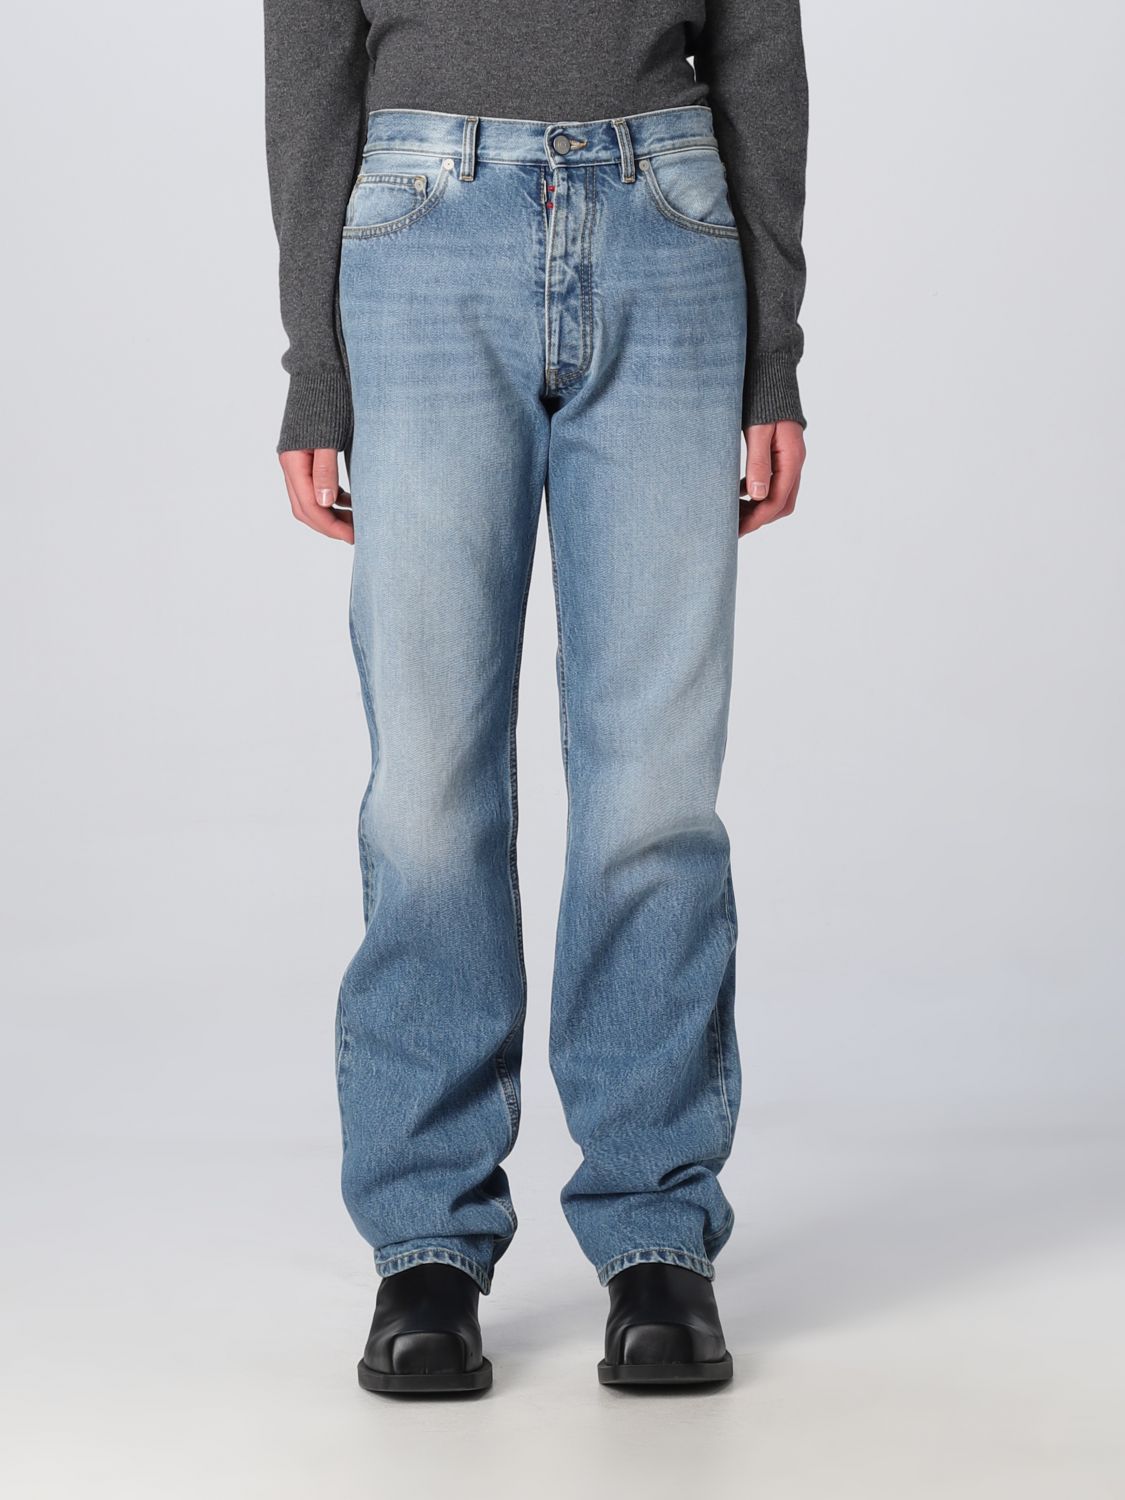 Maison Margiela Outlet: jeans for men - Denim | Maison Margiela